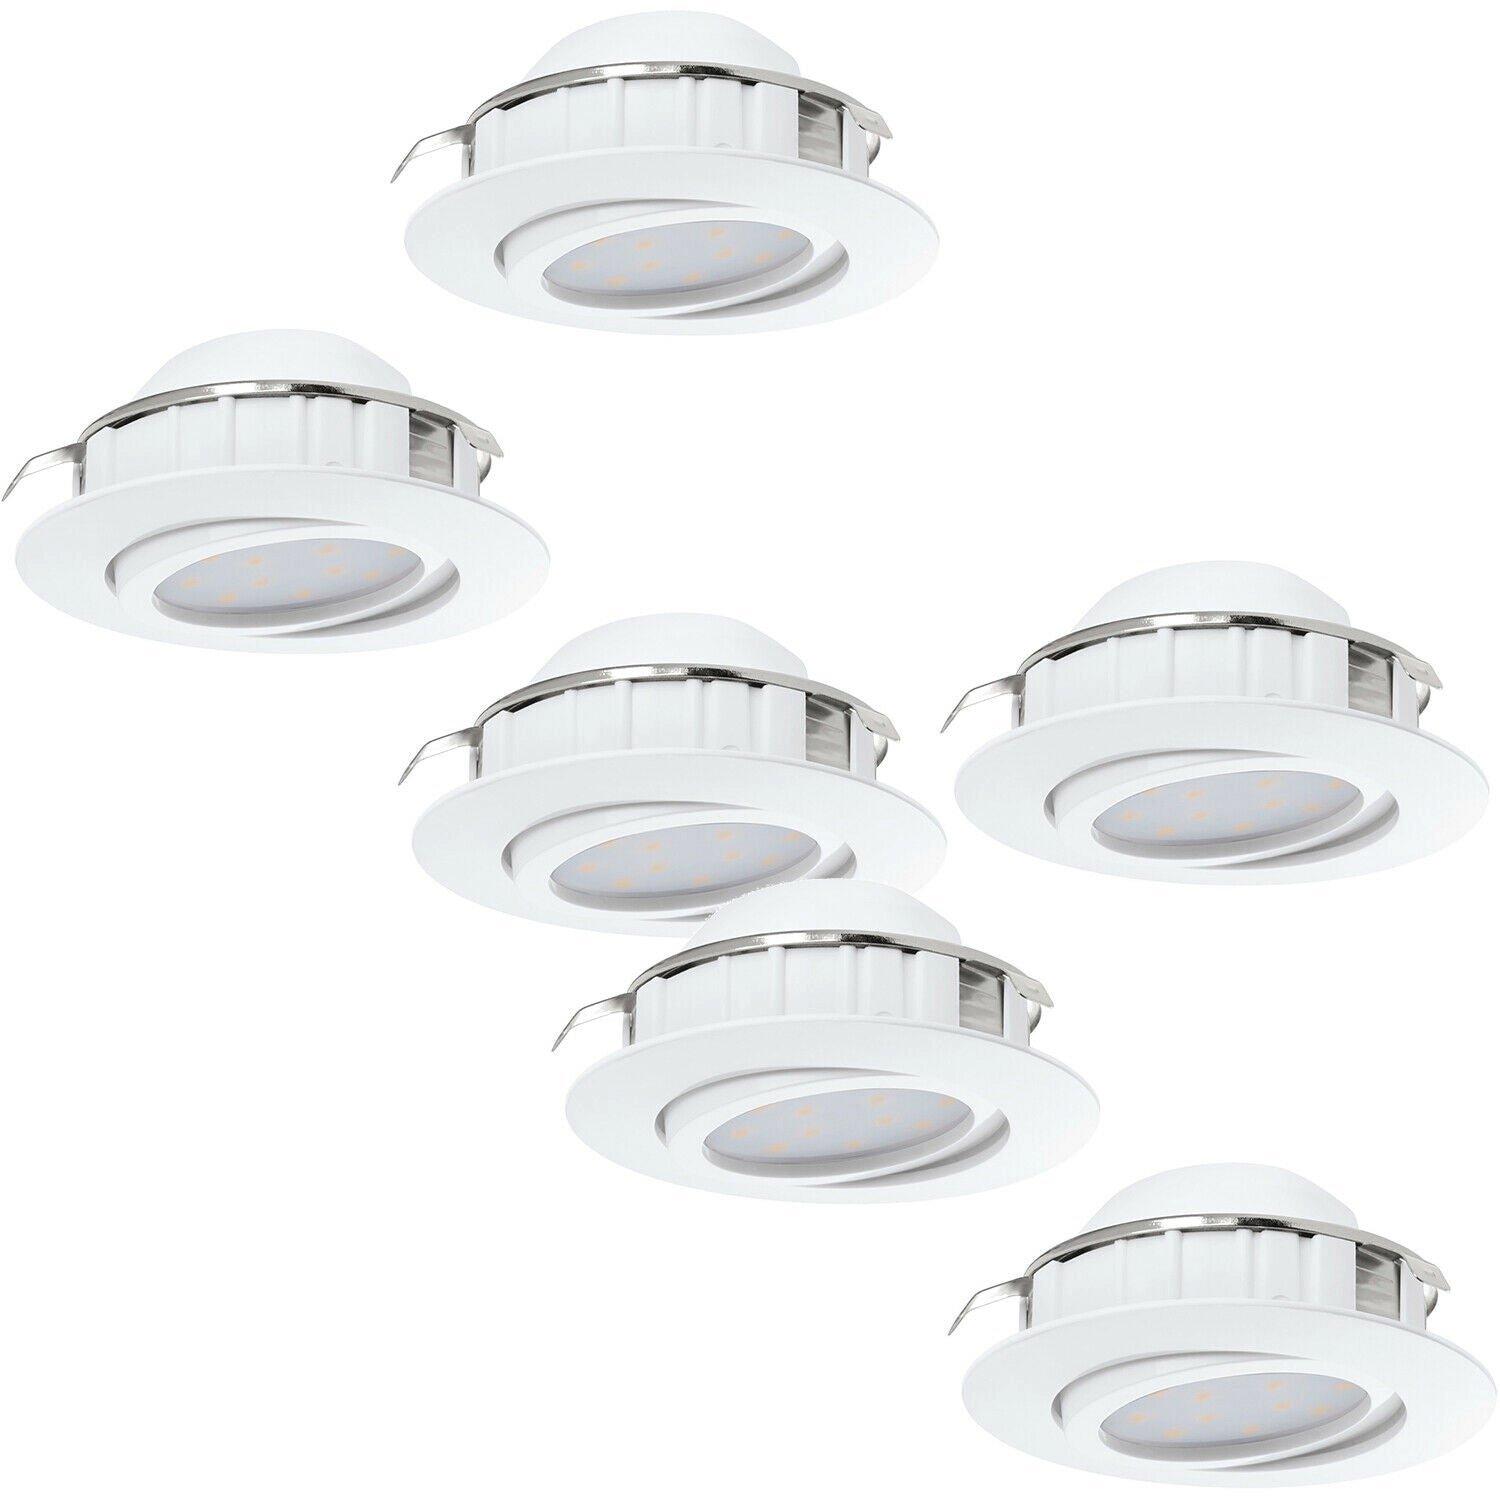 2 PACK 3 PACK Flush Ceiling Downlight White Adjustable Round Spotlight 6W LED